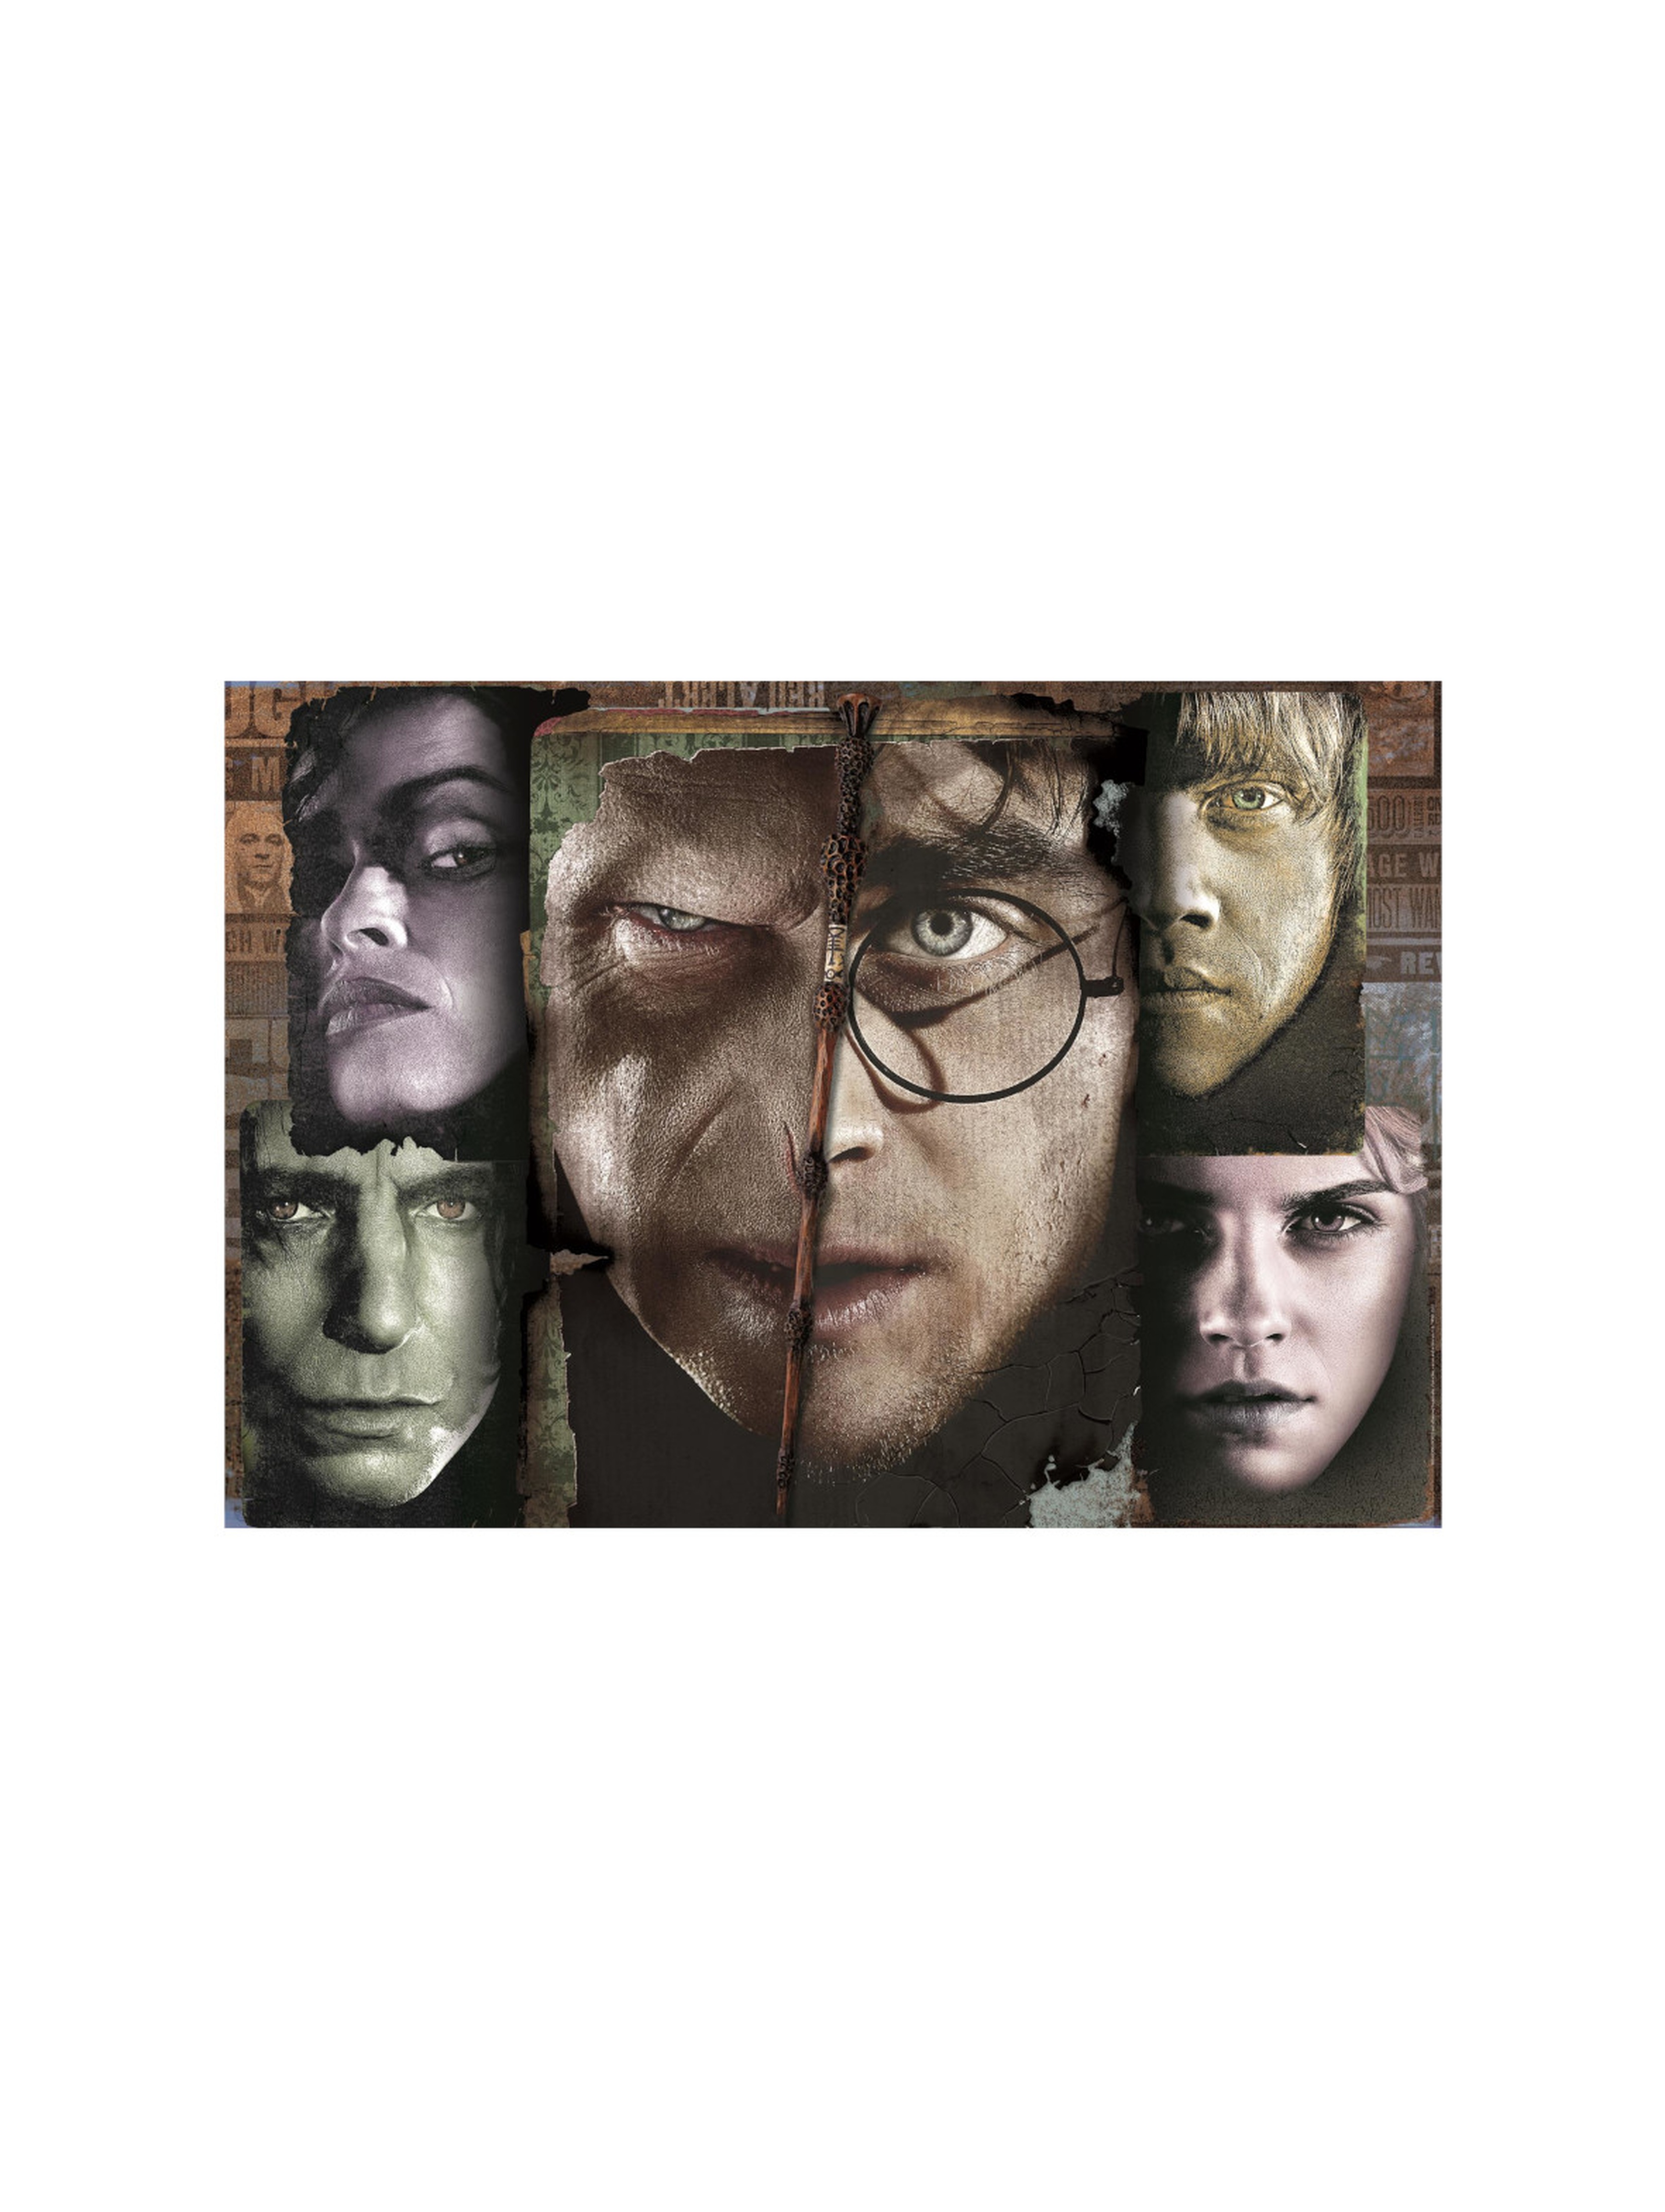 Puzzle Harry Potter Brief Case - 1000 elementów